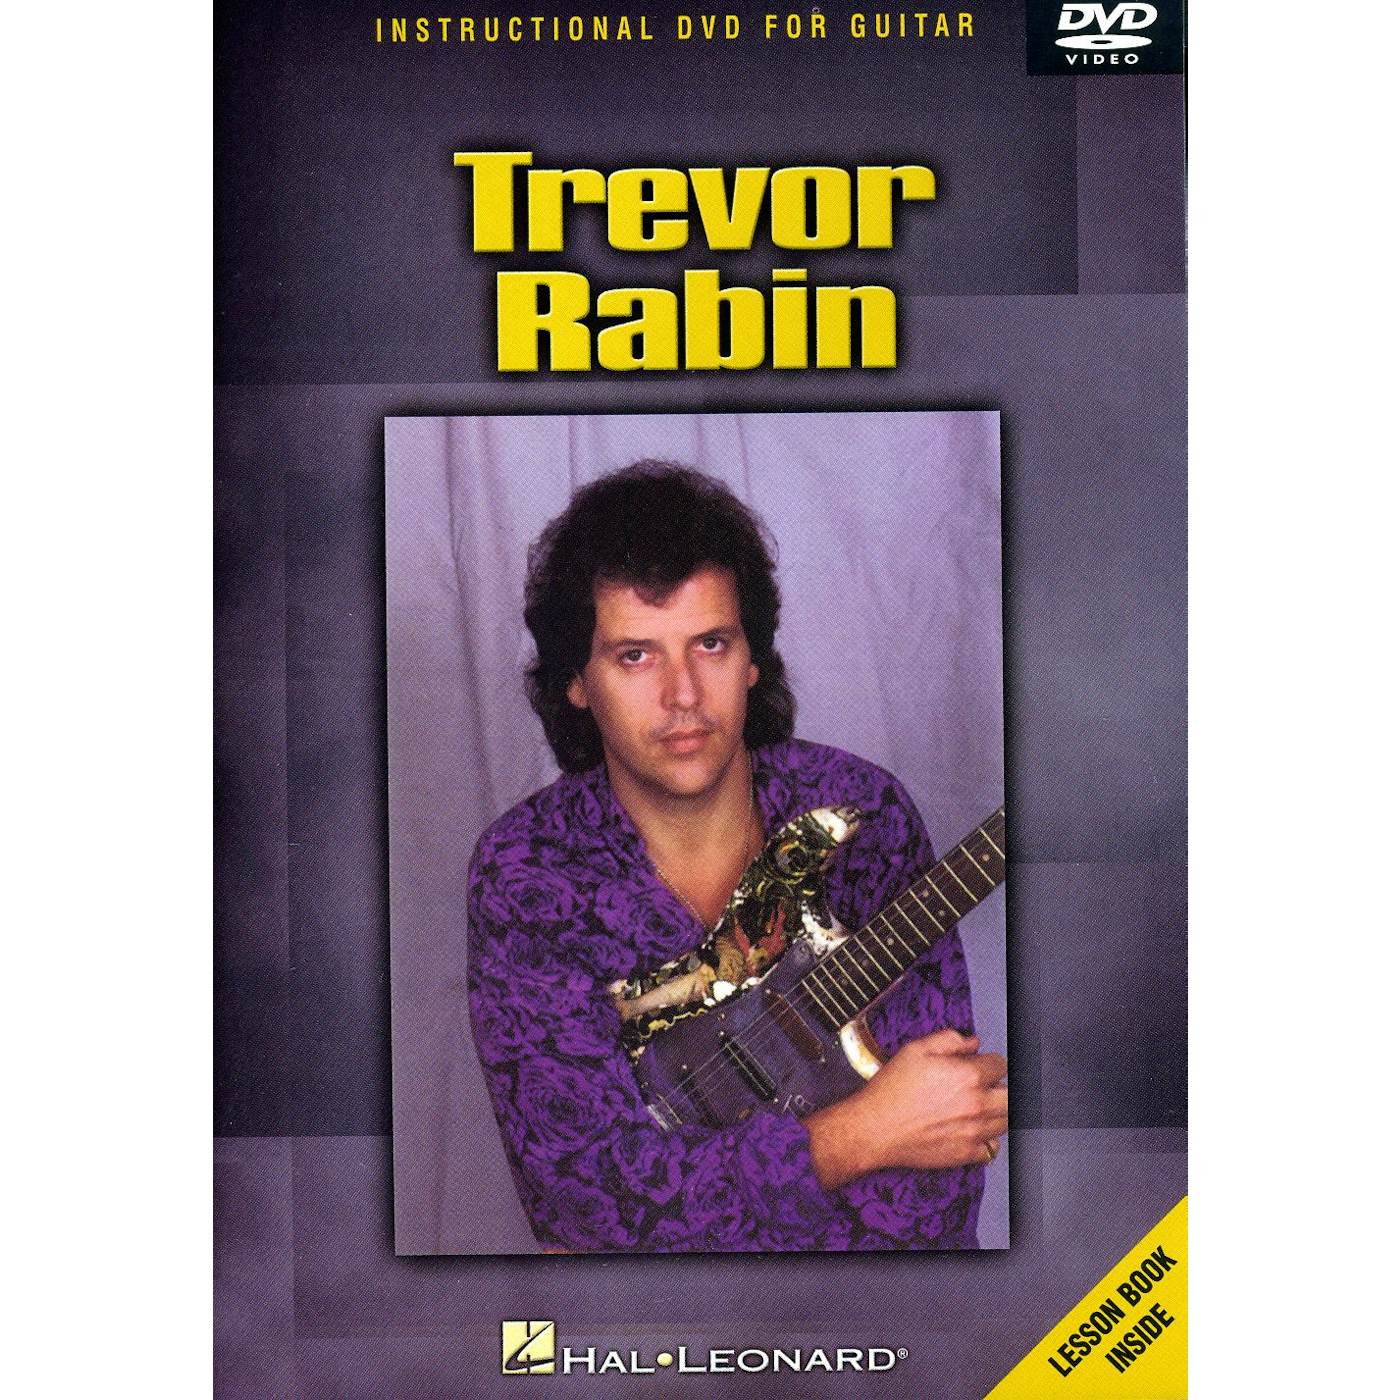 Trevor Rabin INSTRUCTIONAL DVD FOR GUITAR DVD